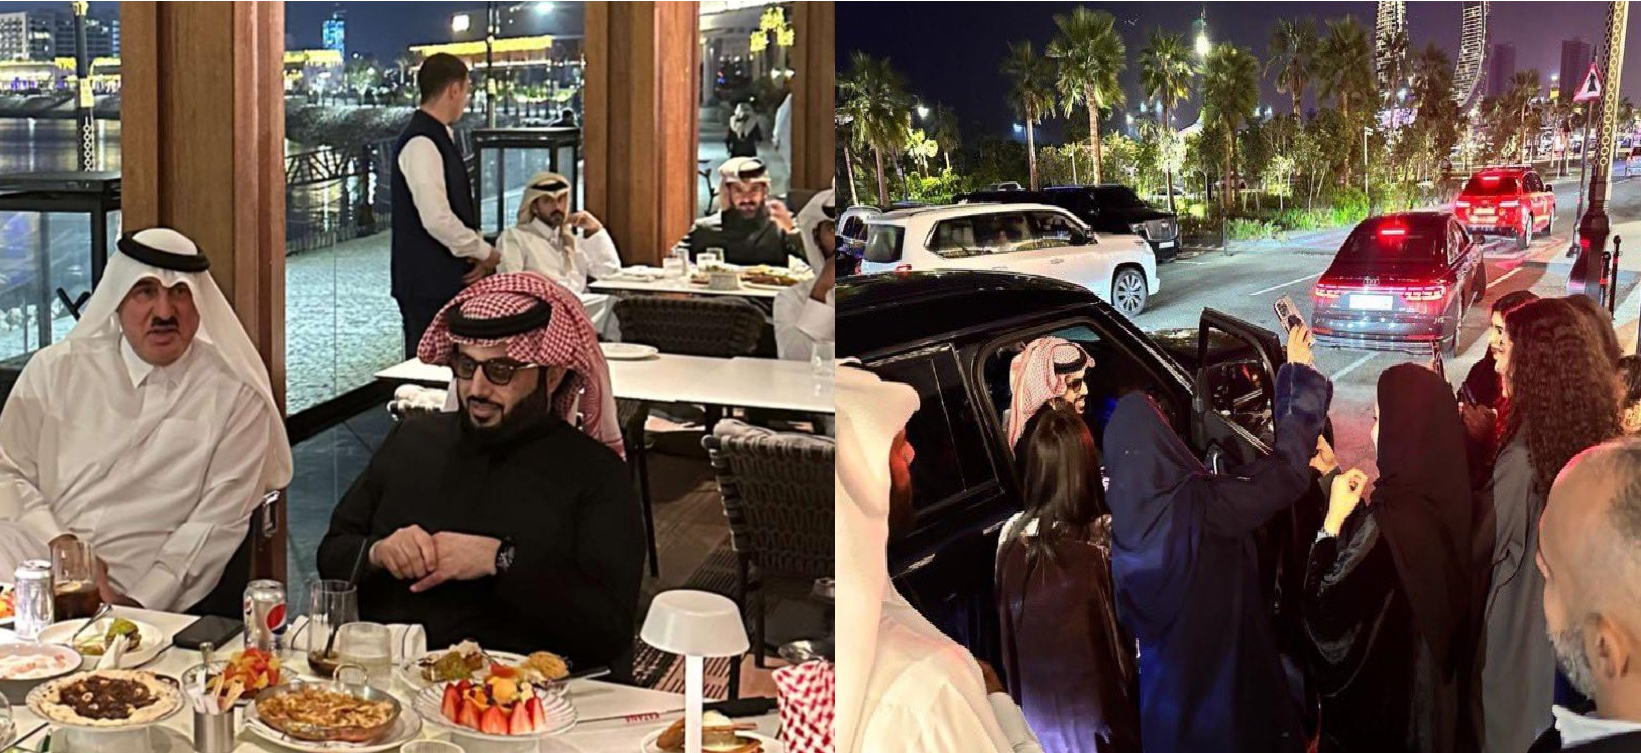 تواجد تركي آل الشيخ في قطر أكد قطريون على عدم ترحيبهم بقدومه إلى بلادهم بعد شتمه الدوحة